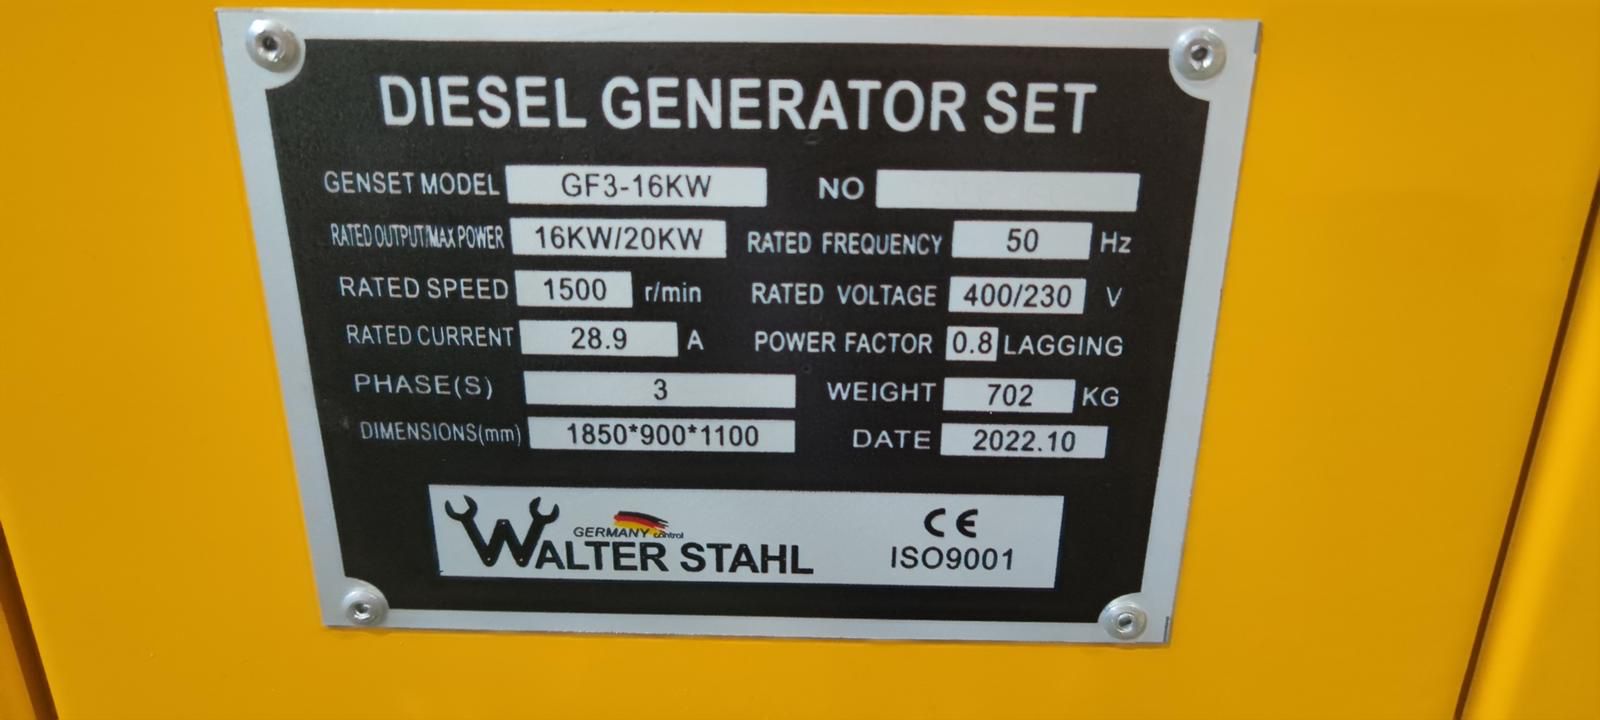 48687 - WALTER STAHL Diesel Generator Europe